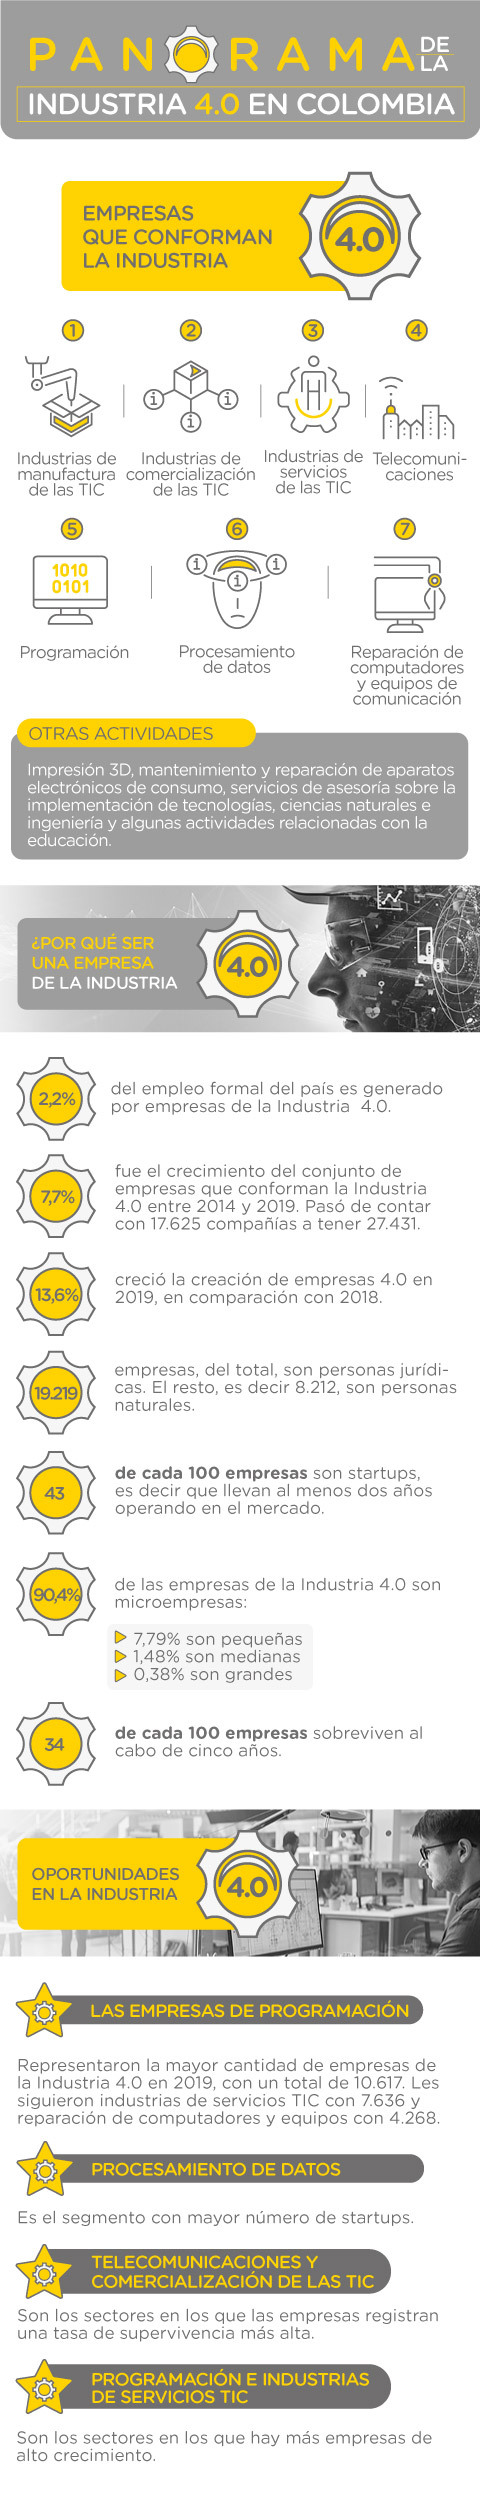 Panorama de la Industria 4.0 en Colombia